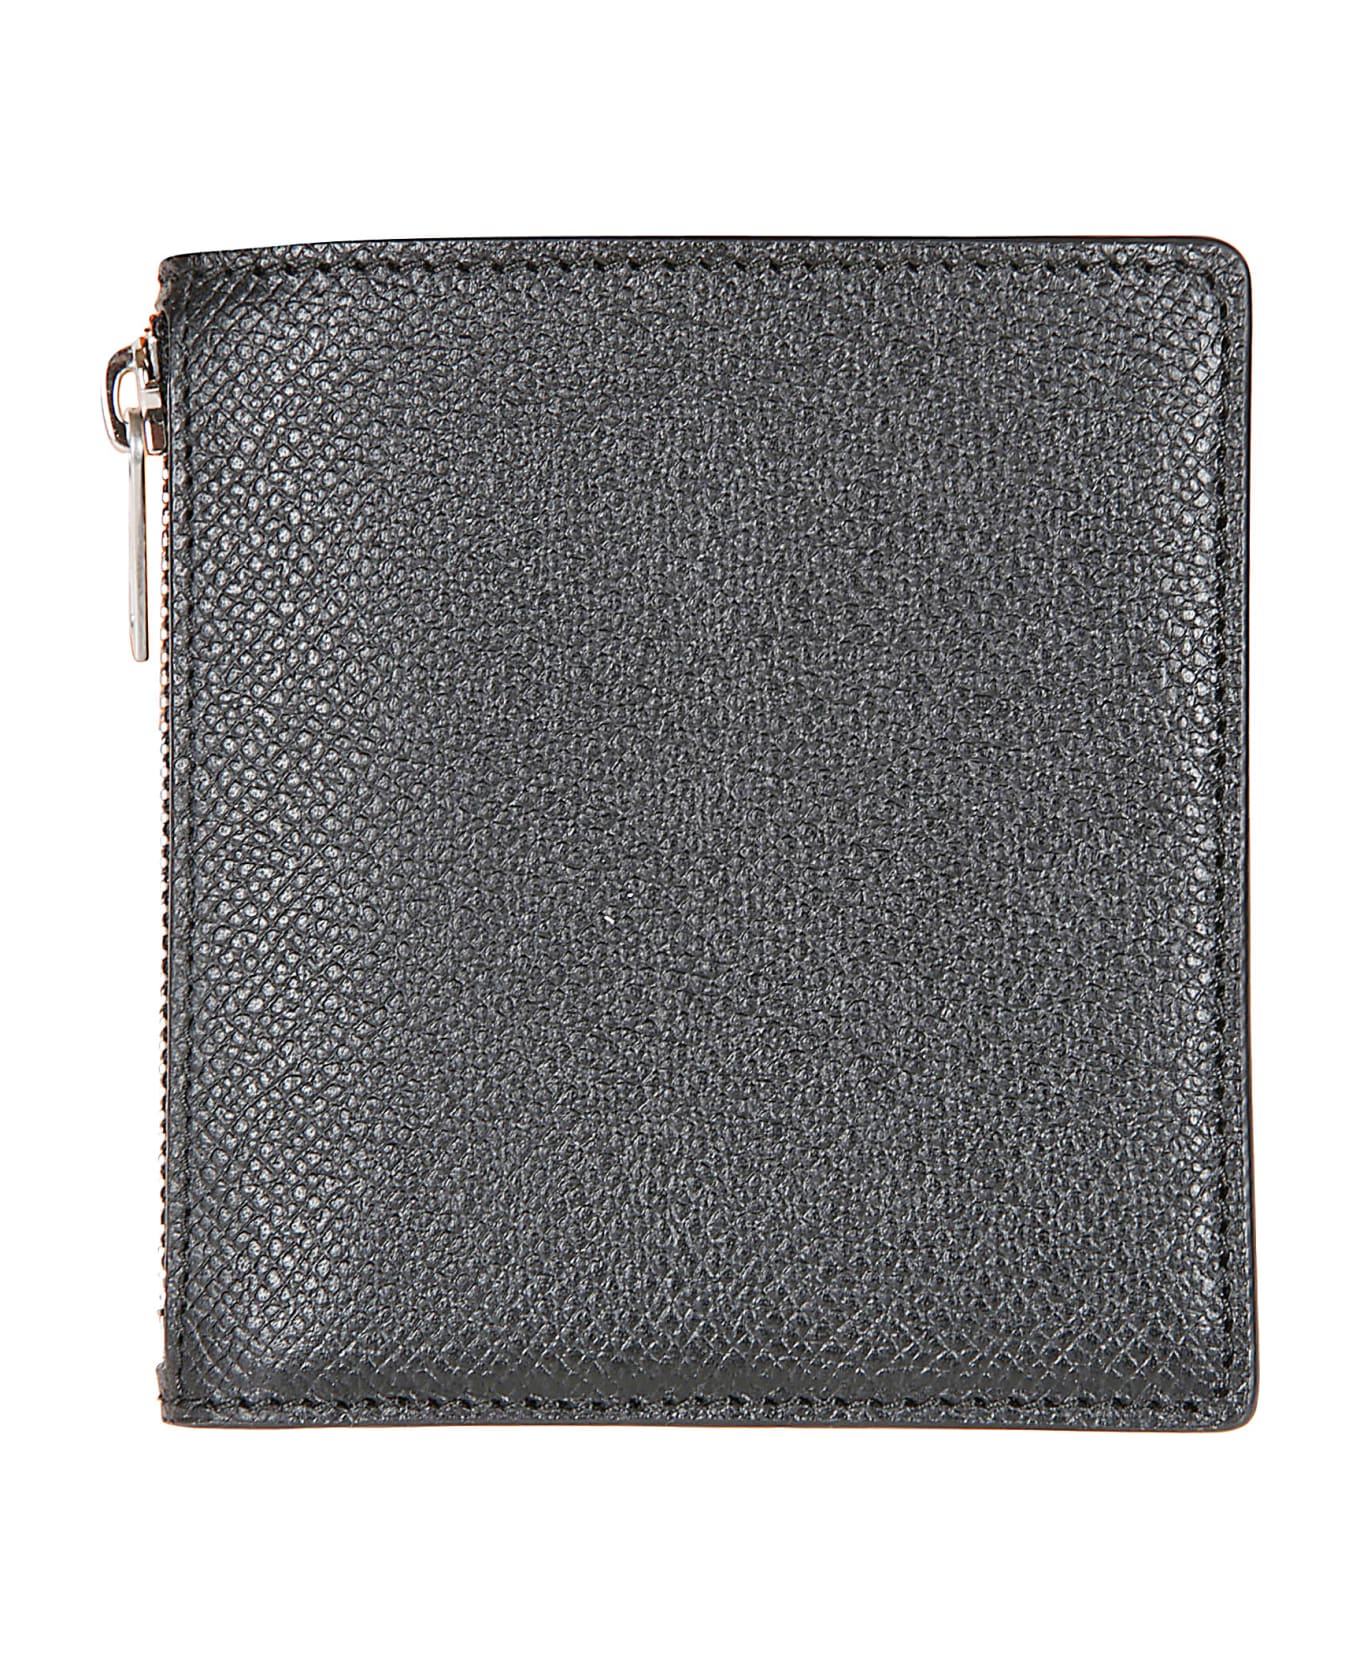 Maison Margiela Four Stitches Wallet - Black 財布